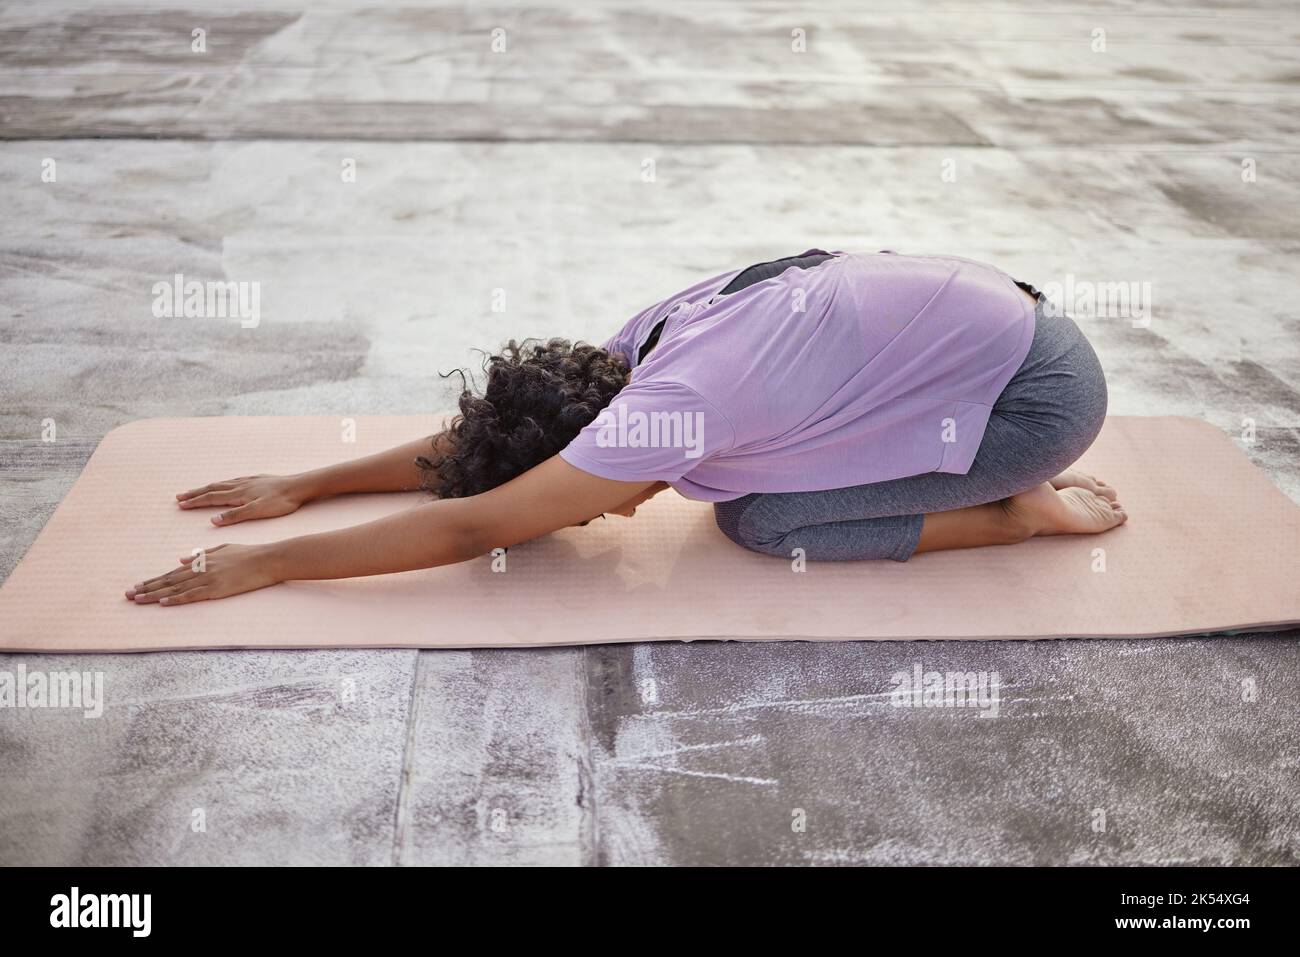 Entraînement de yoga zen, étirement du corps avec exercice de plancher de bien-être sur le tapis et femme indienne spirituelle dans la pose des enfants. Santé mentale pleine de conscience, se détendre Banque D'Images